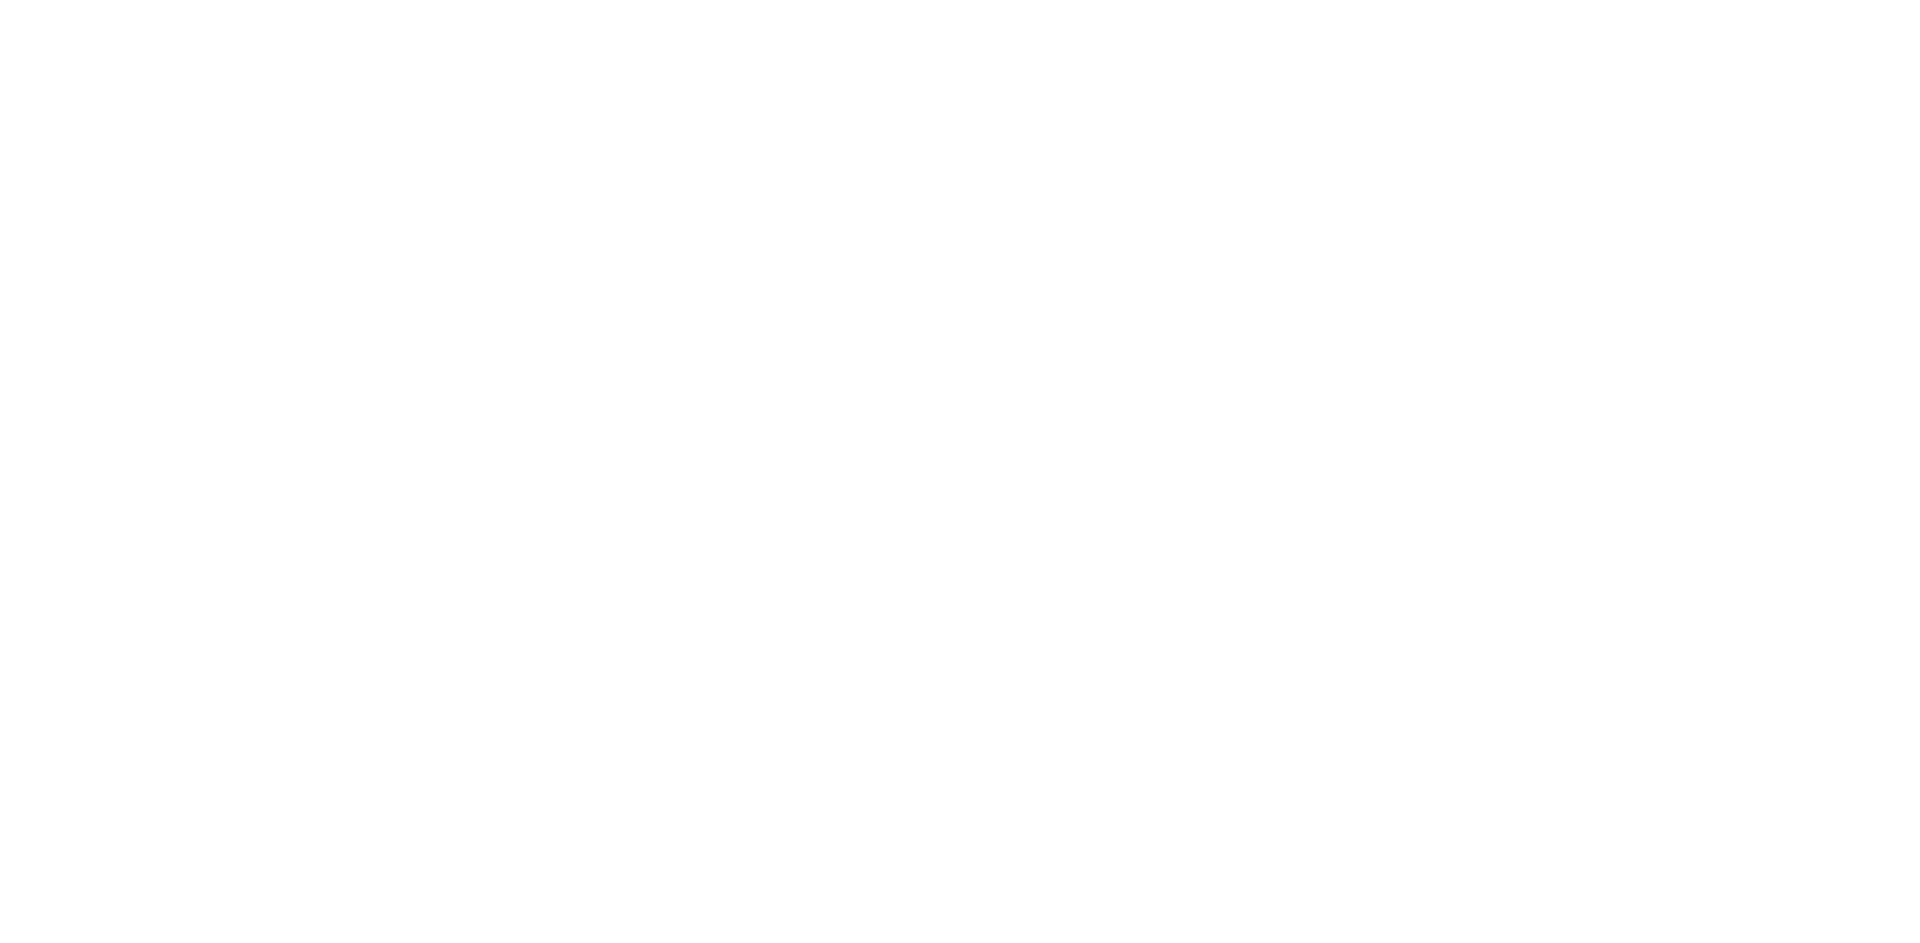 Groupe IMA